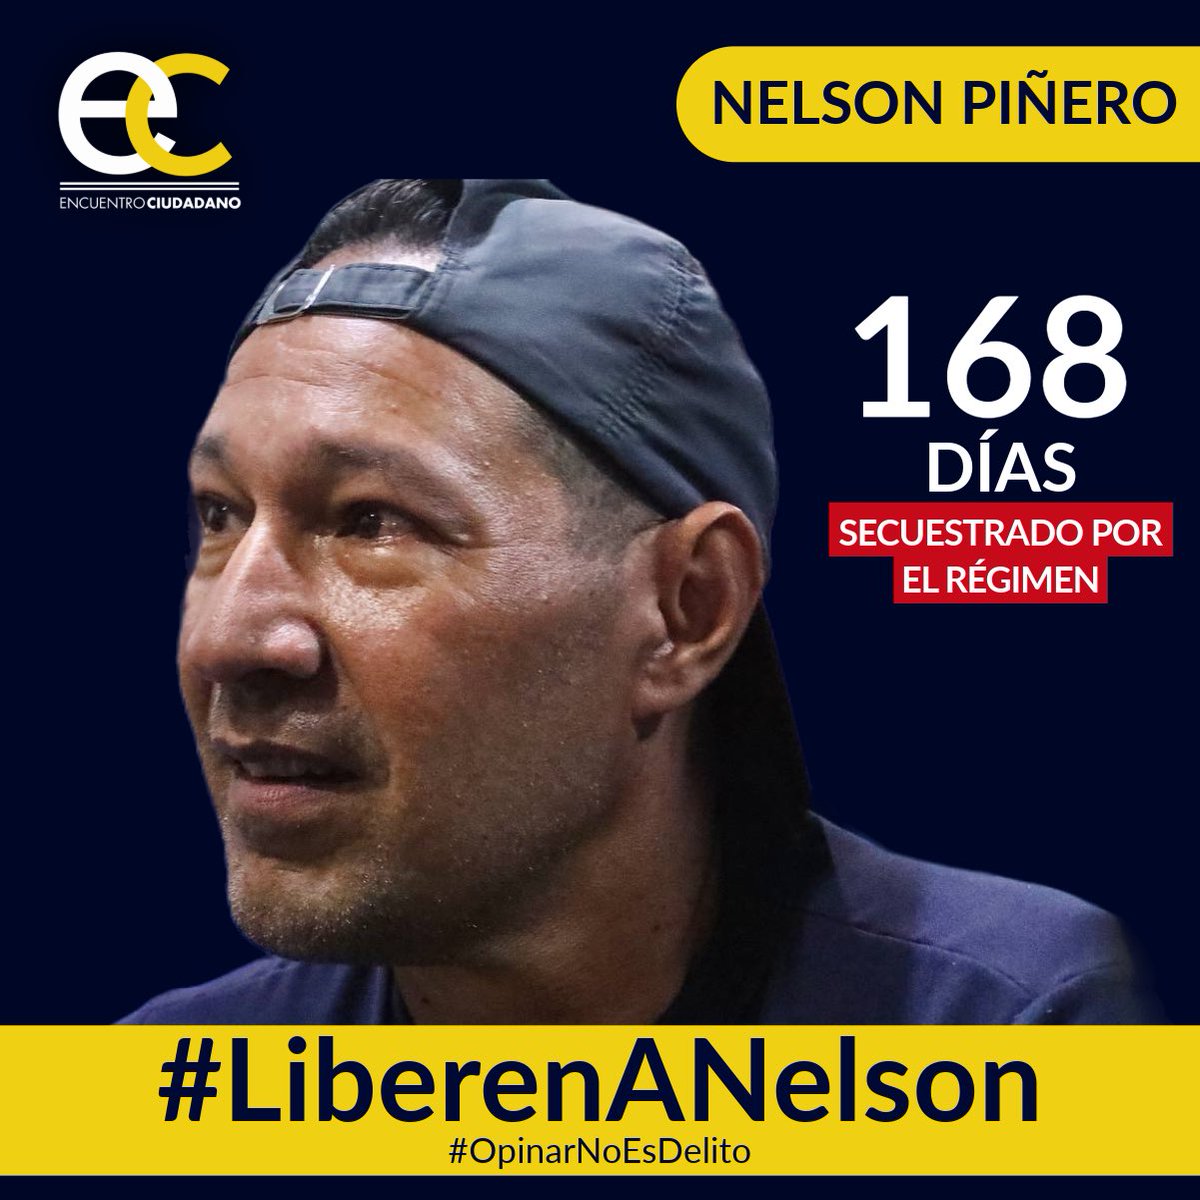 #07May | Nelson Piñero, activista de #EncuentroCiudadano, lleva 168 días secuestrado por el régimen solo por emitir sus opiniones en redes sociales.

#OpinarNoEsDelito y por eso exigimos su liberación inmediata.

#LiberenANelson 
#LiberenALosPresosPolíticos